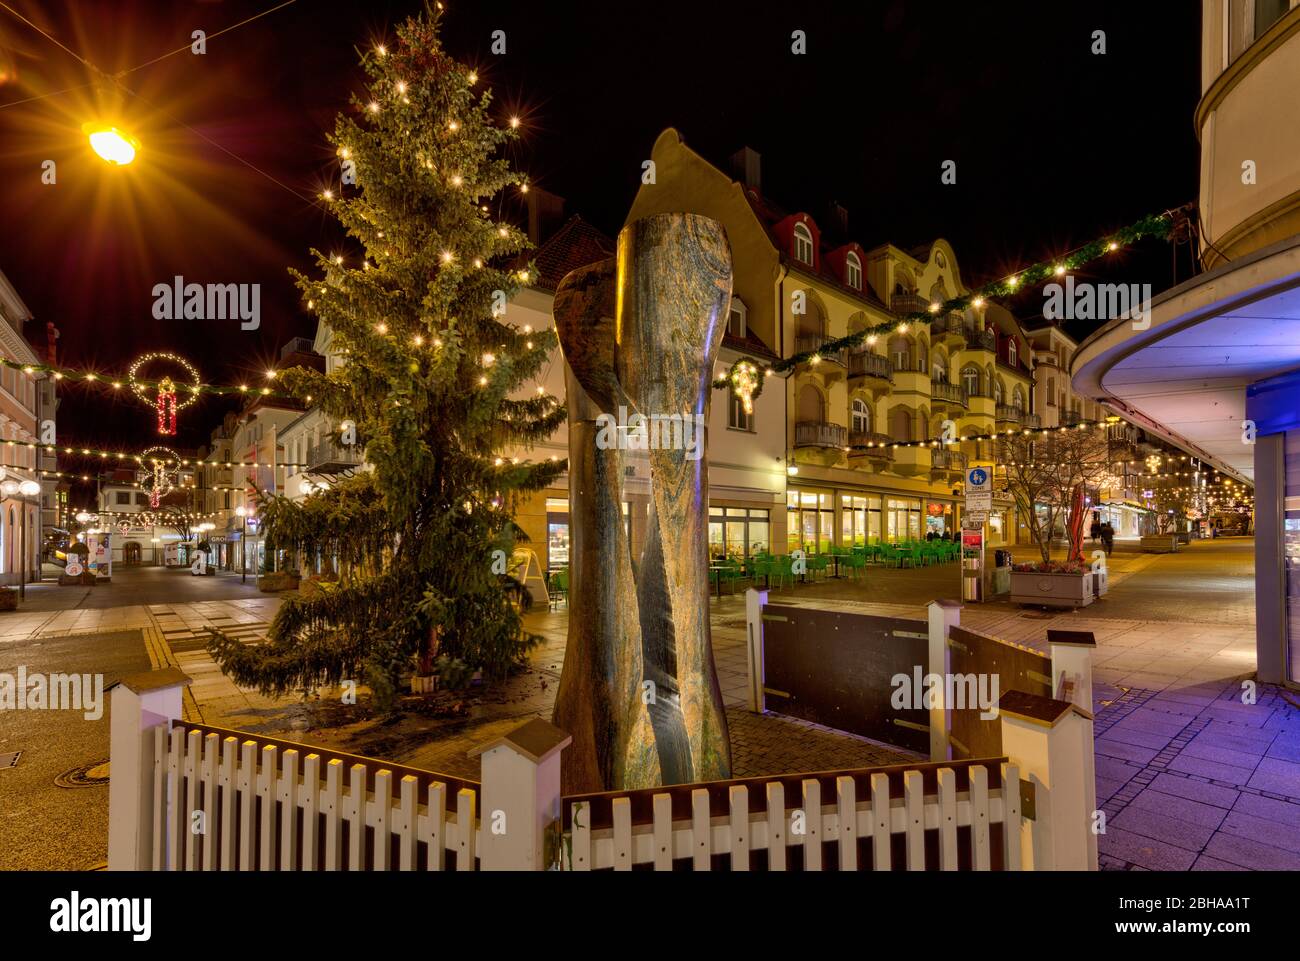 Fußgängerzentrum, Kurstadt, Abend, Weihnachtsdekoration, Bad Kissingen, Franken, Bayern, Deutschland, Stock Photo